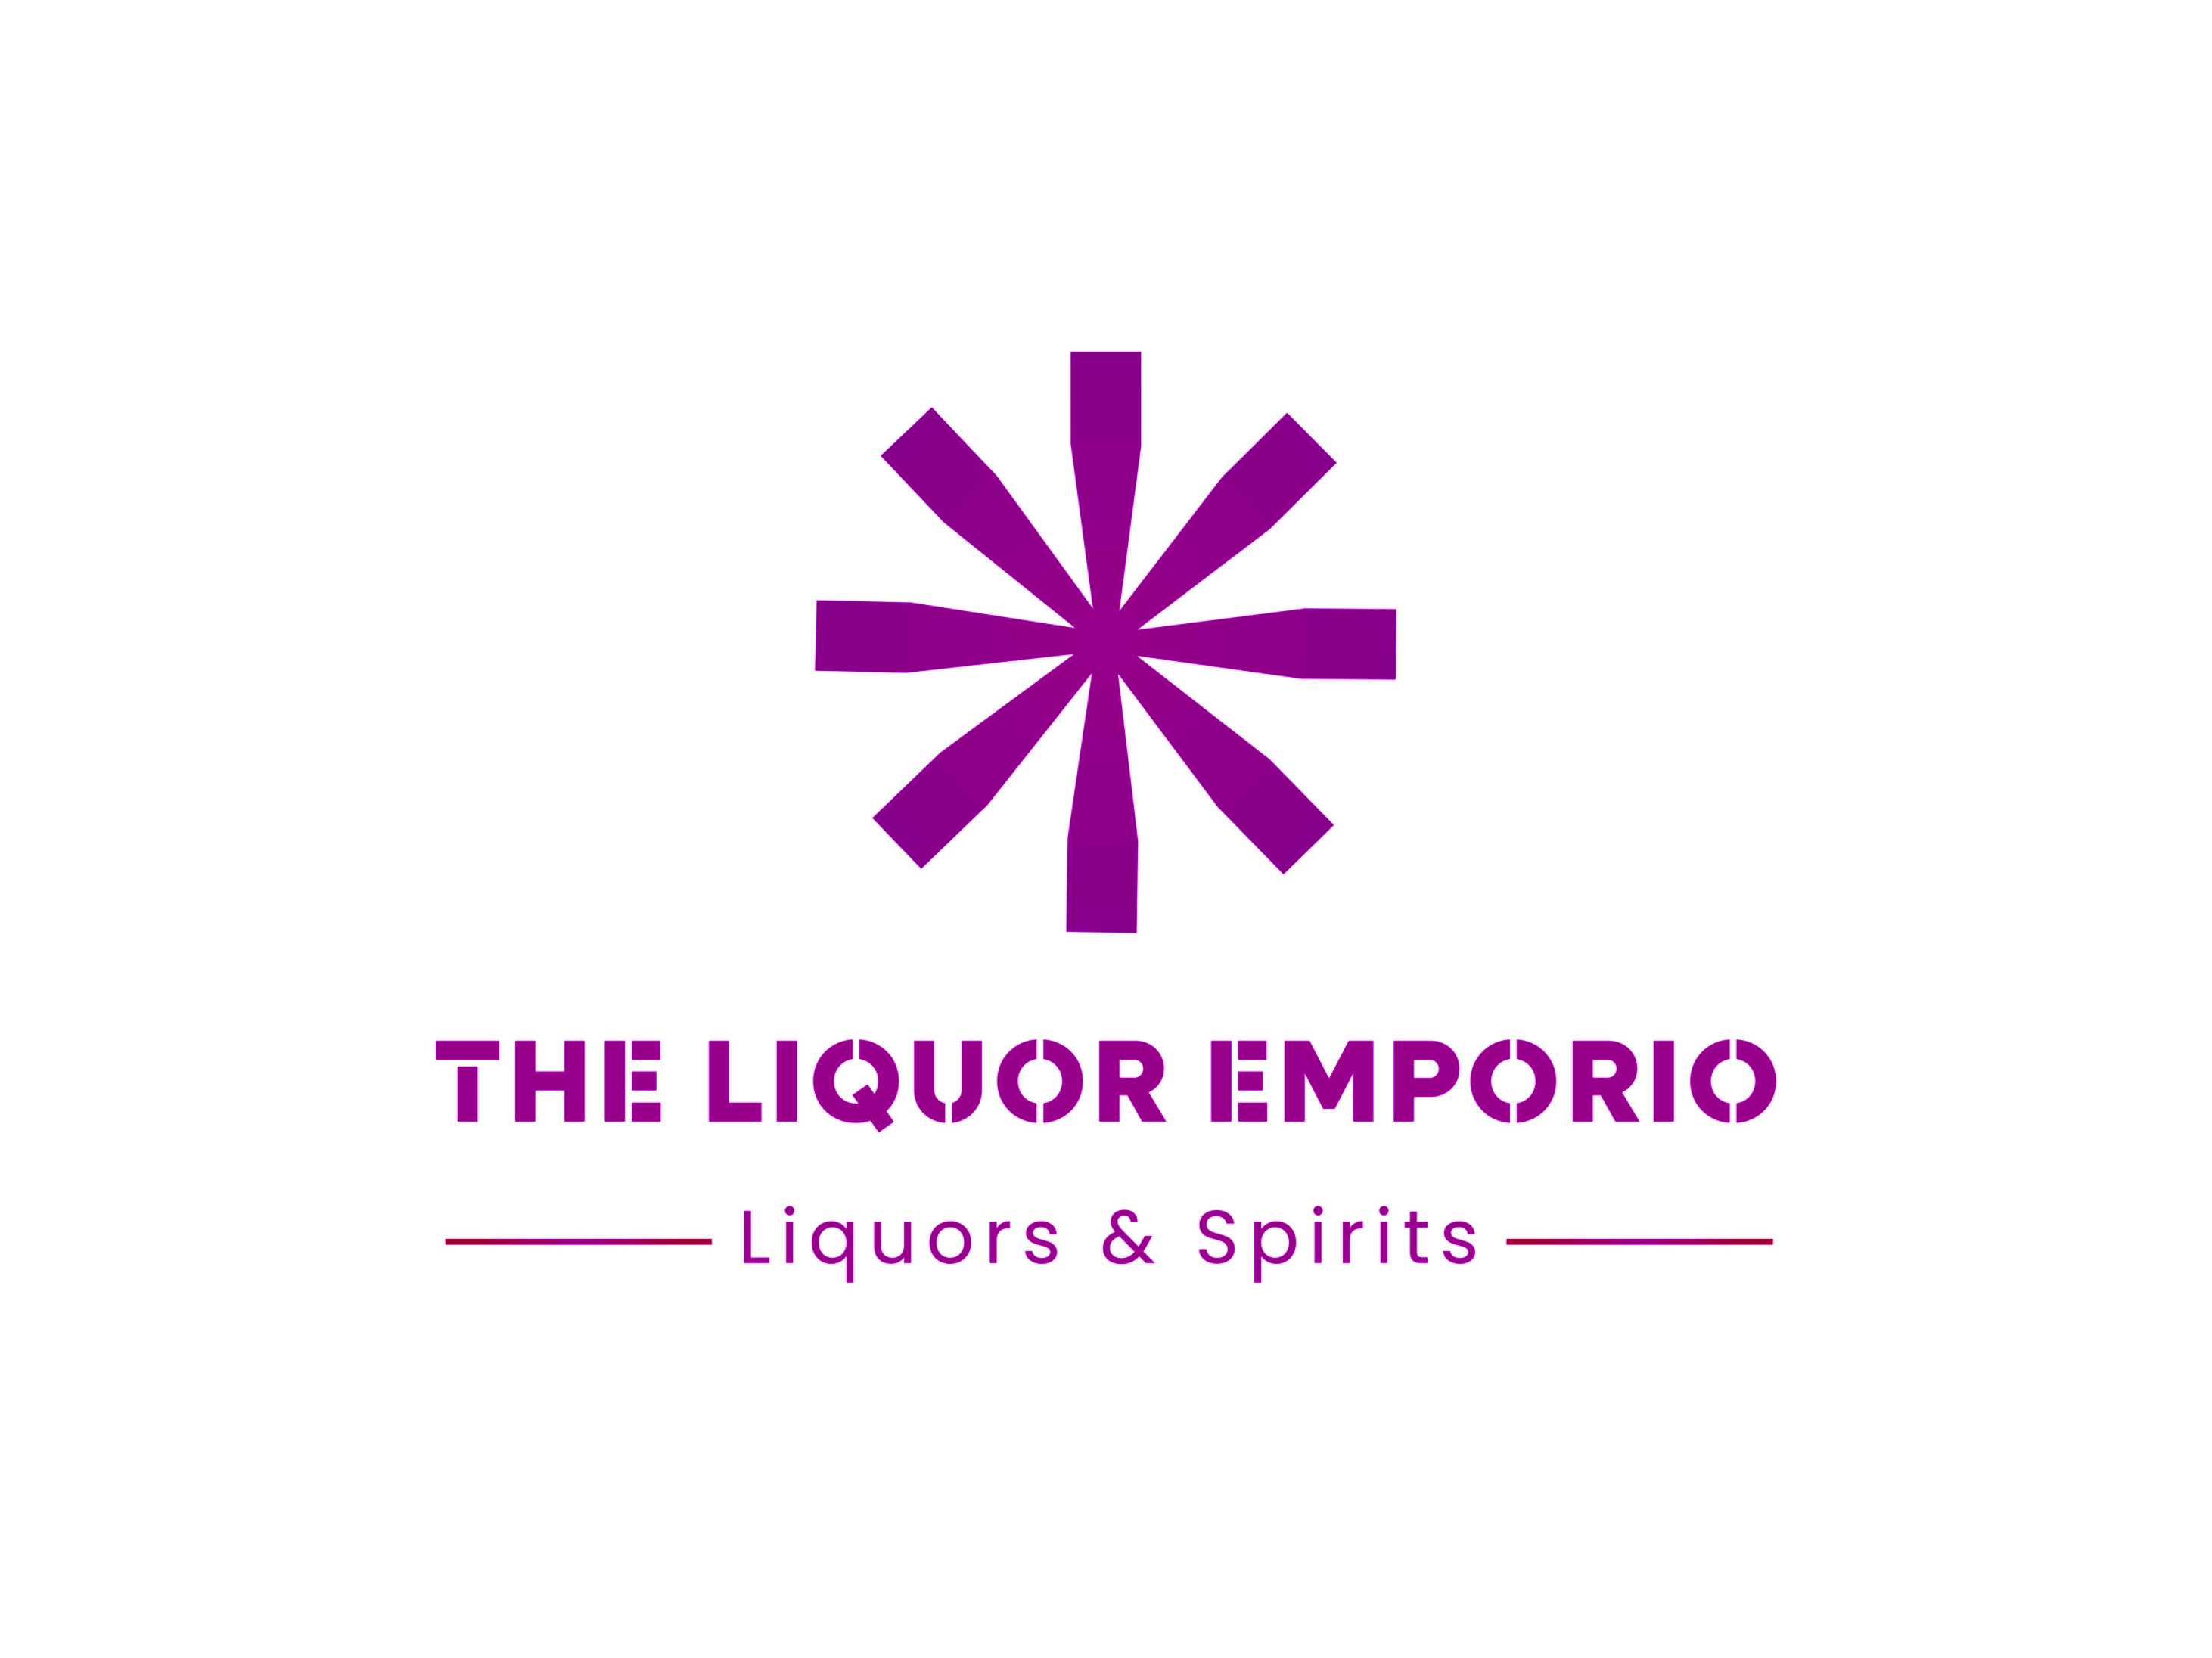 The Liquor Emporio